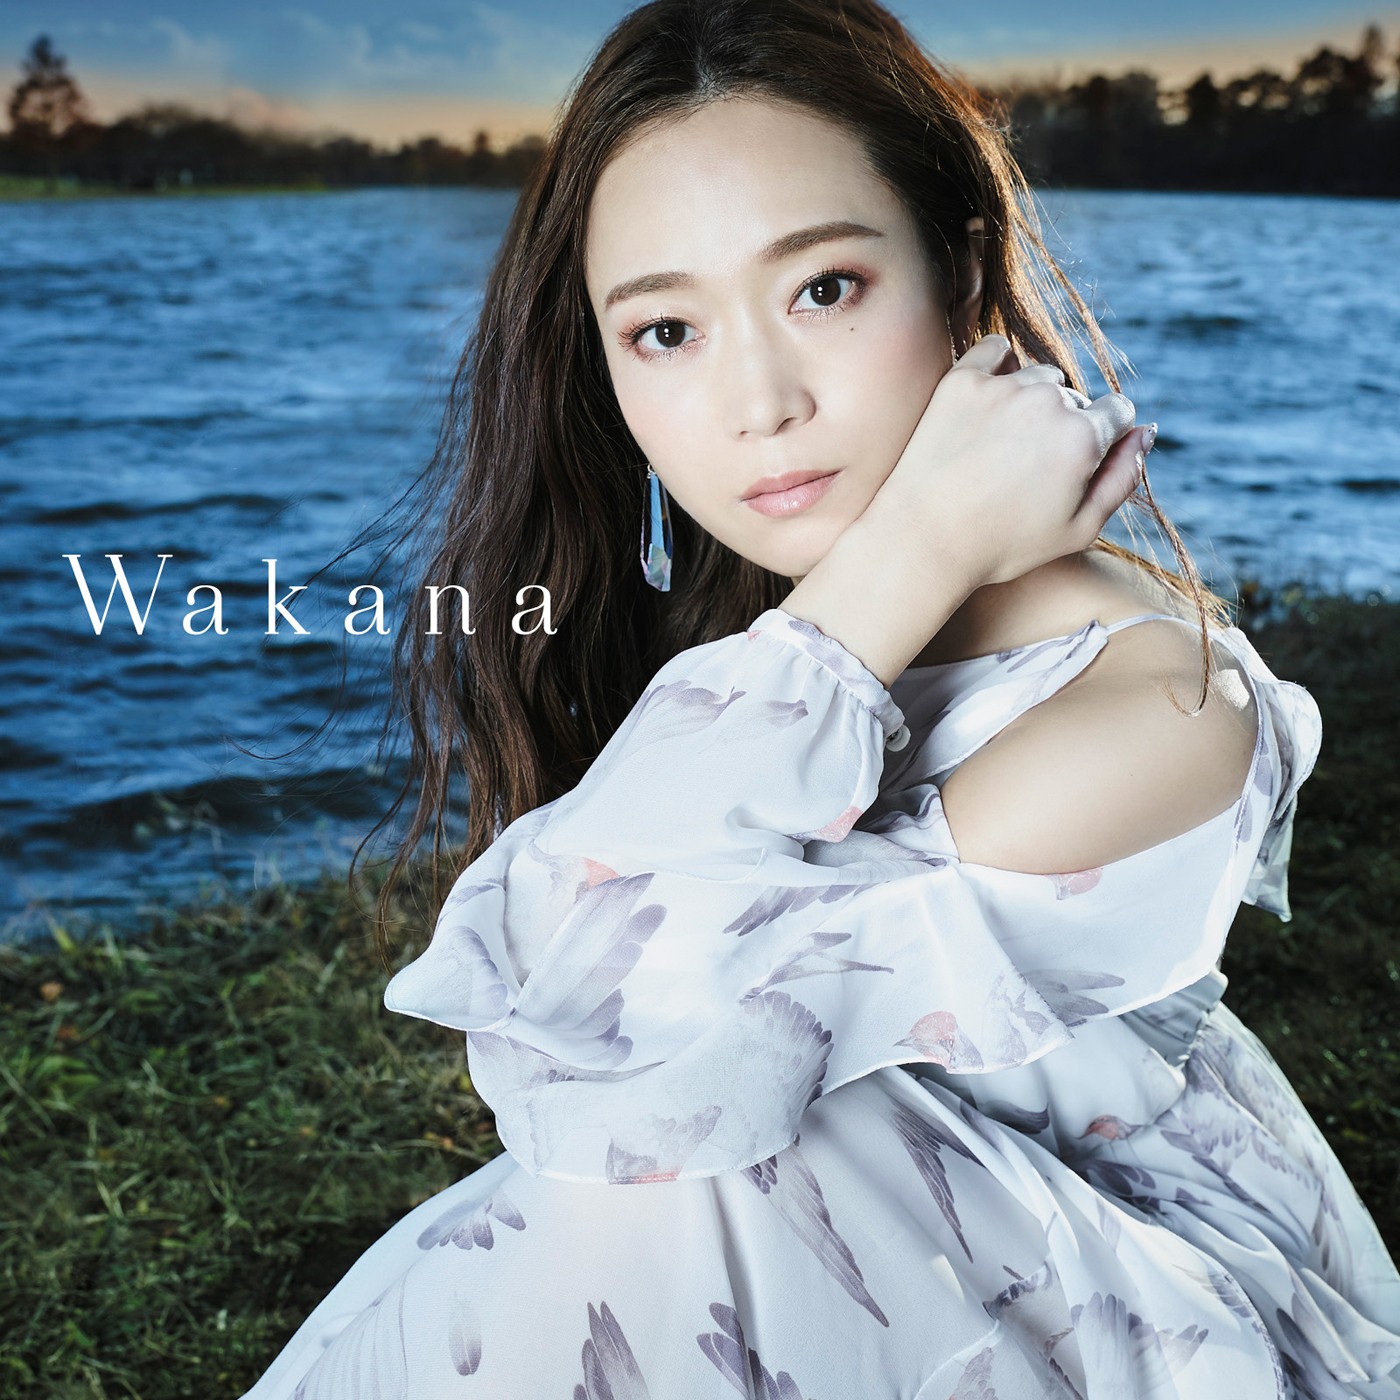 Wakana – J-pop Music Download